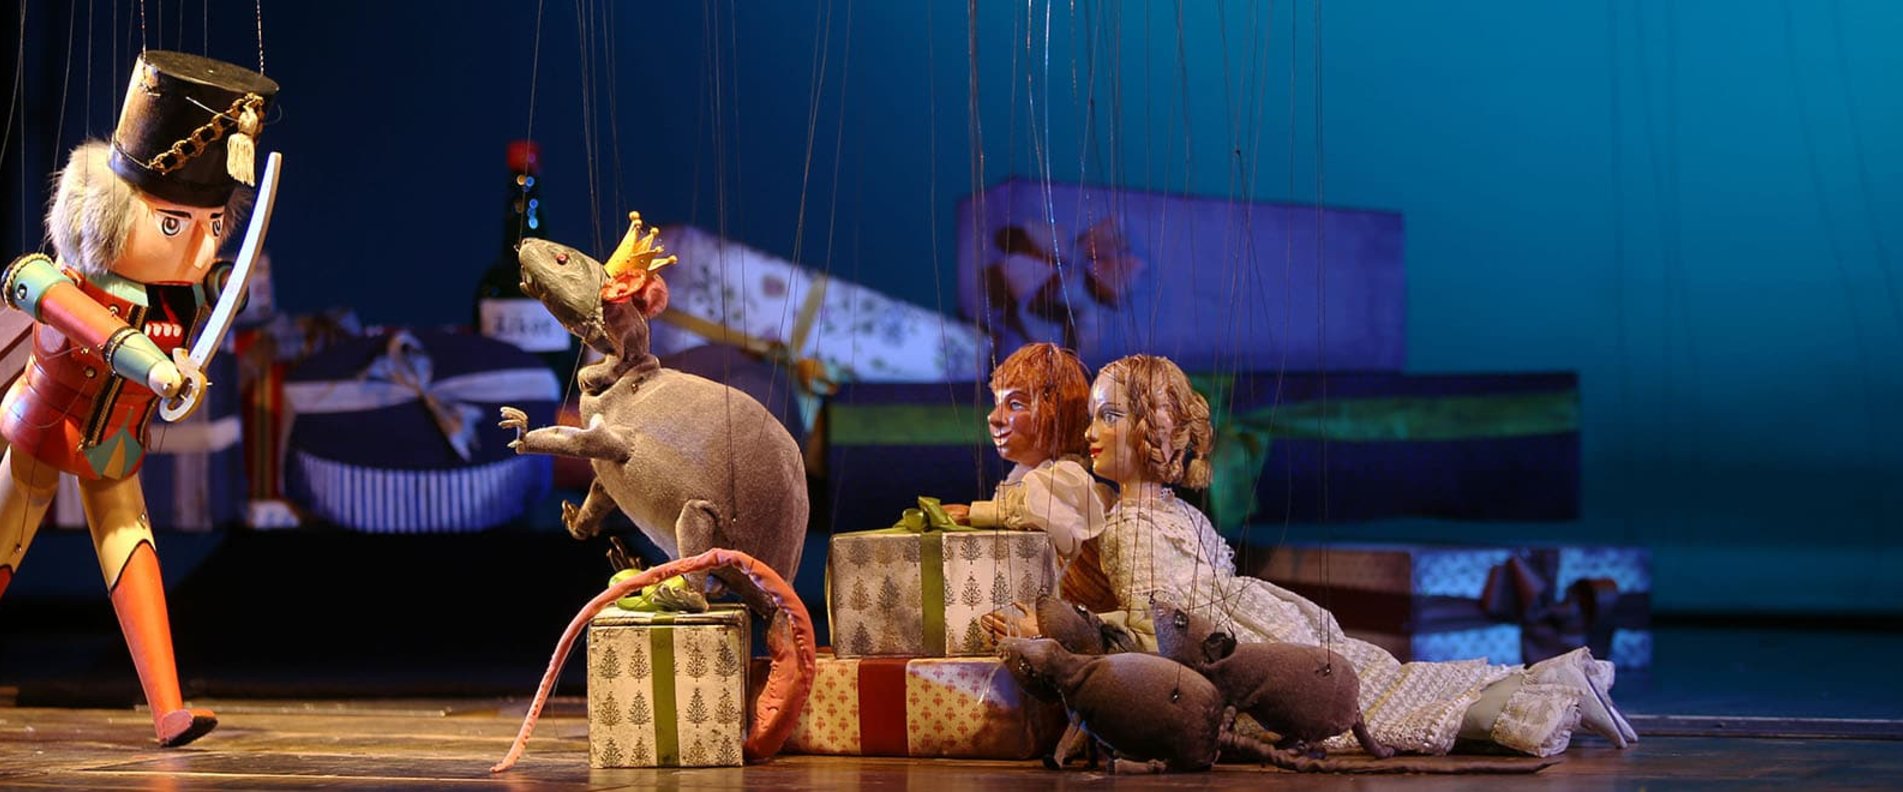 Kinder Weihnachten Salzburg | © Salzburger Marionettentheater